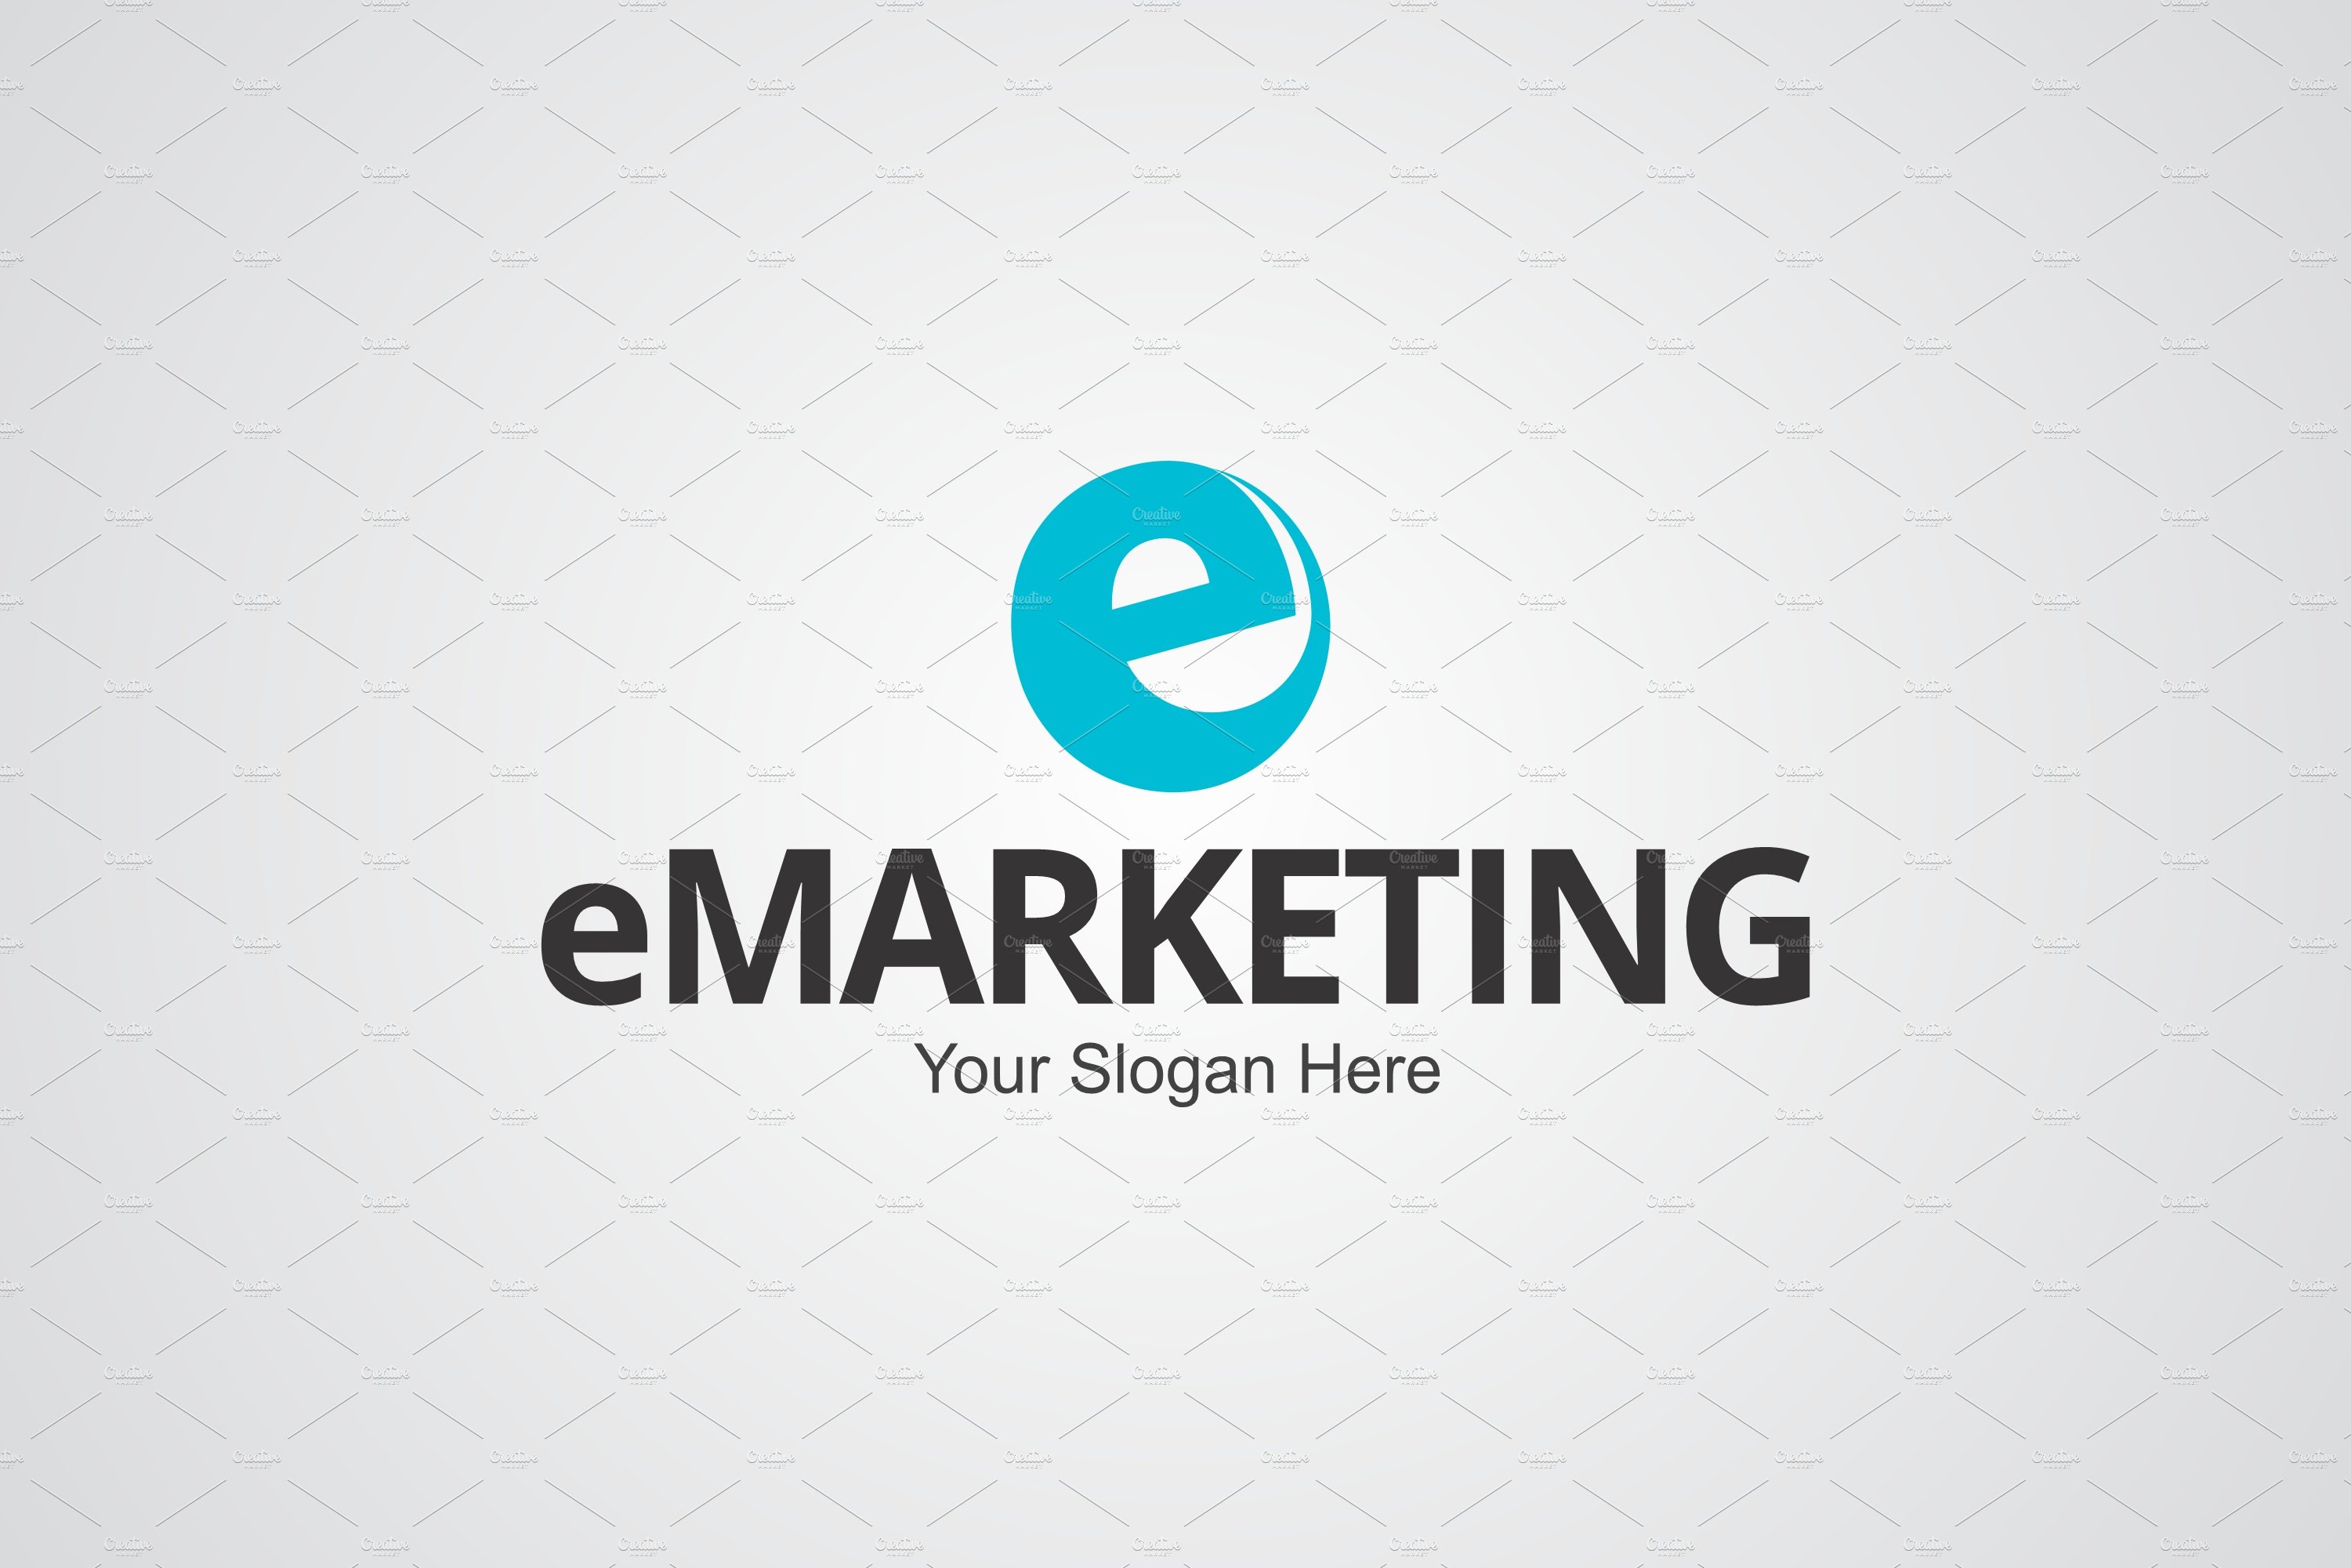 E Marketing Logo Design Template cover image.